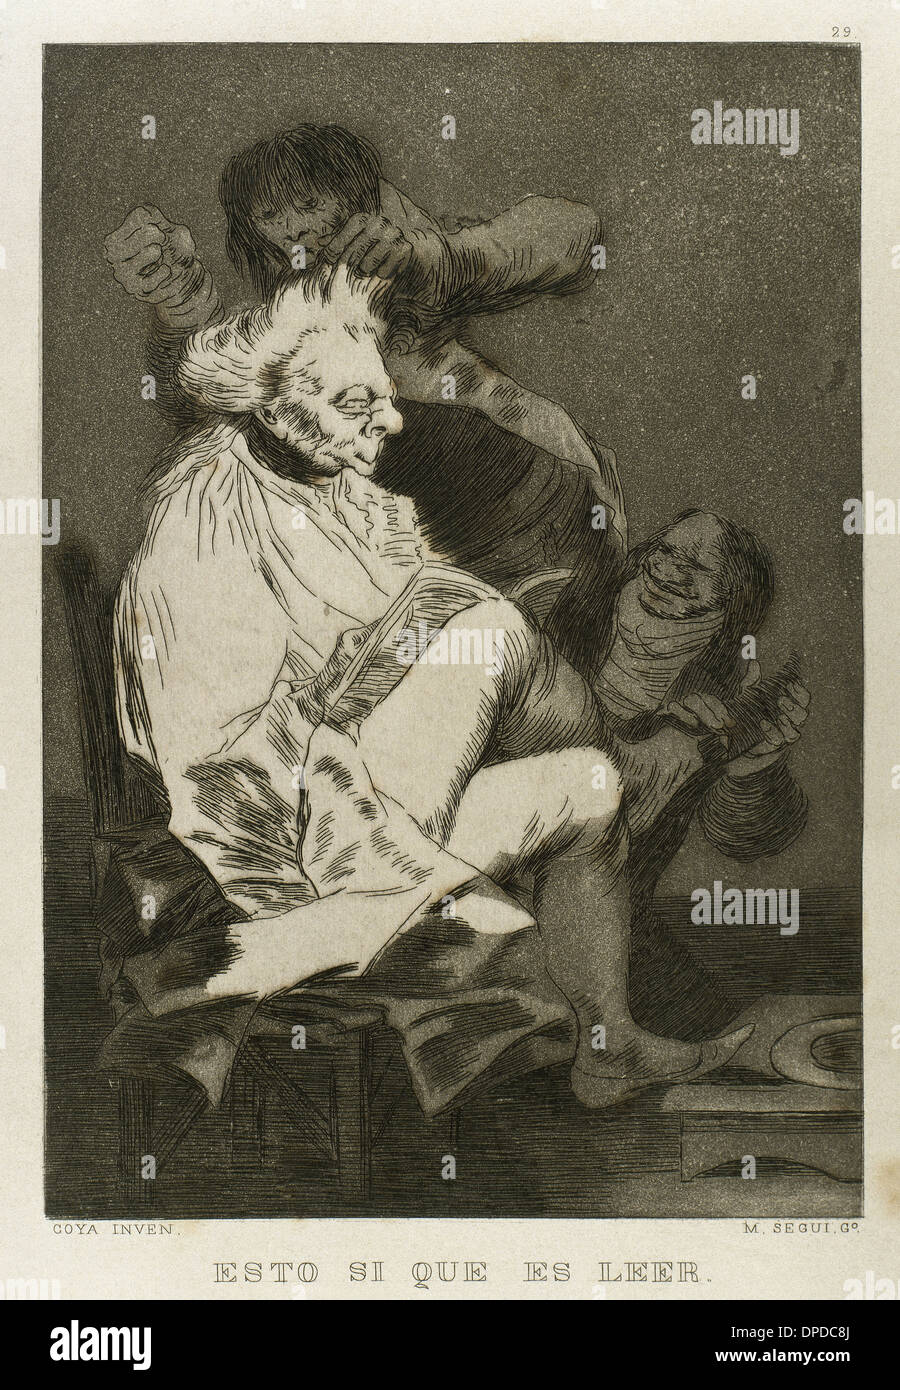 Goya (1746-1828). Pintor y grabador español. Los Caprichos. Esto si es ller (esto son leídos). El número 29. Aguatinta. Foto de stock